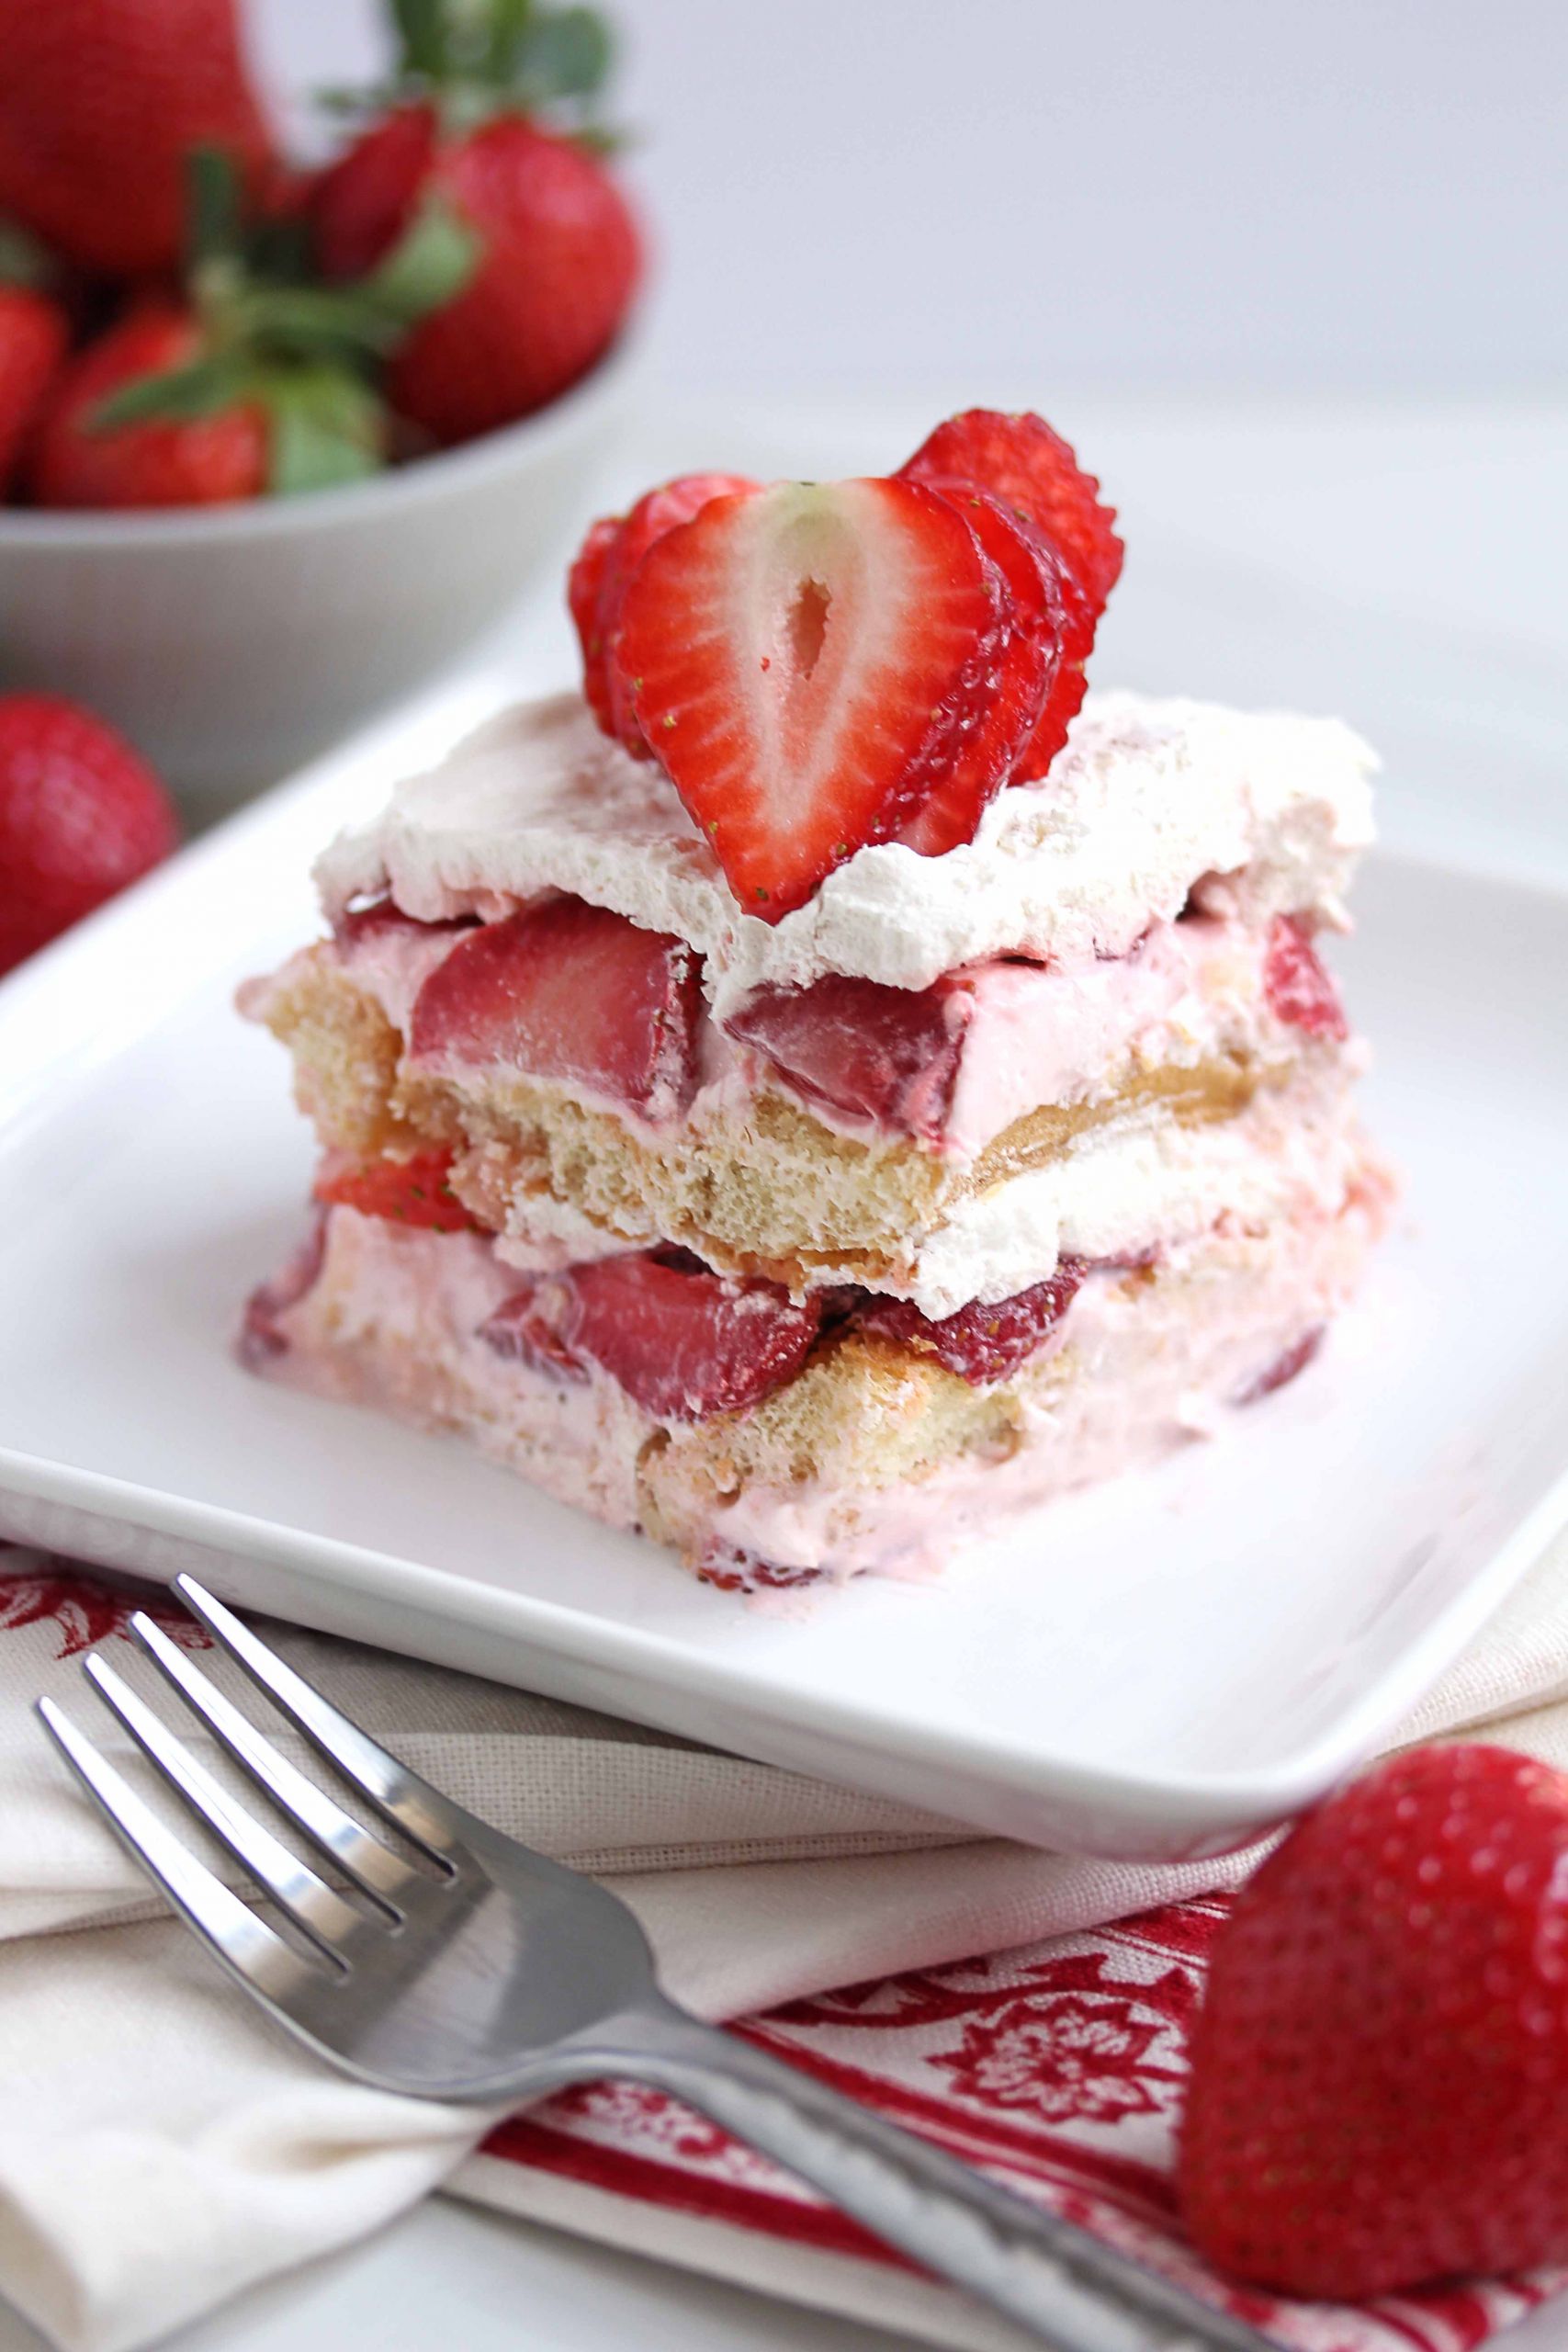 Strawberry Dessert Ideas
 The 13 Best Strawberry Desserts